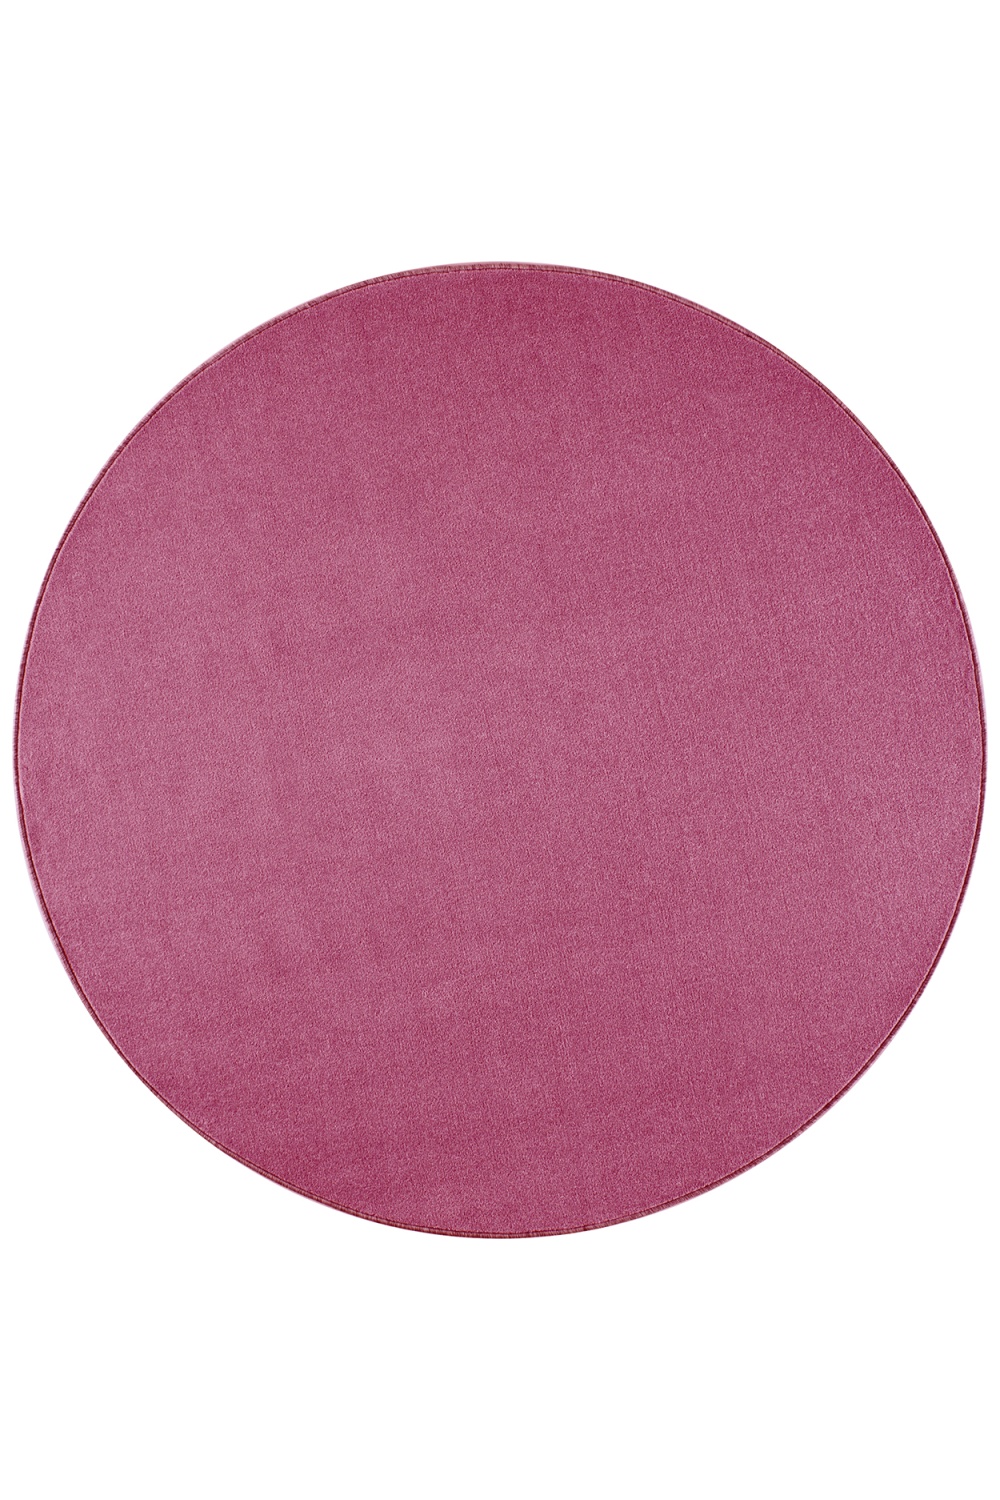 Dywan Różowy Jednokolorowy Nasty Okrągły 101147 Pink